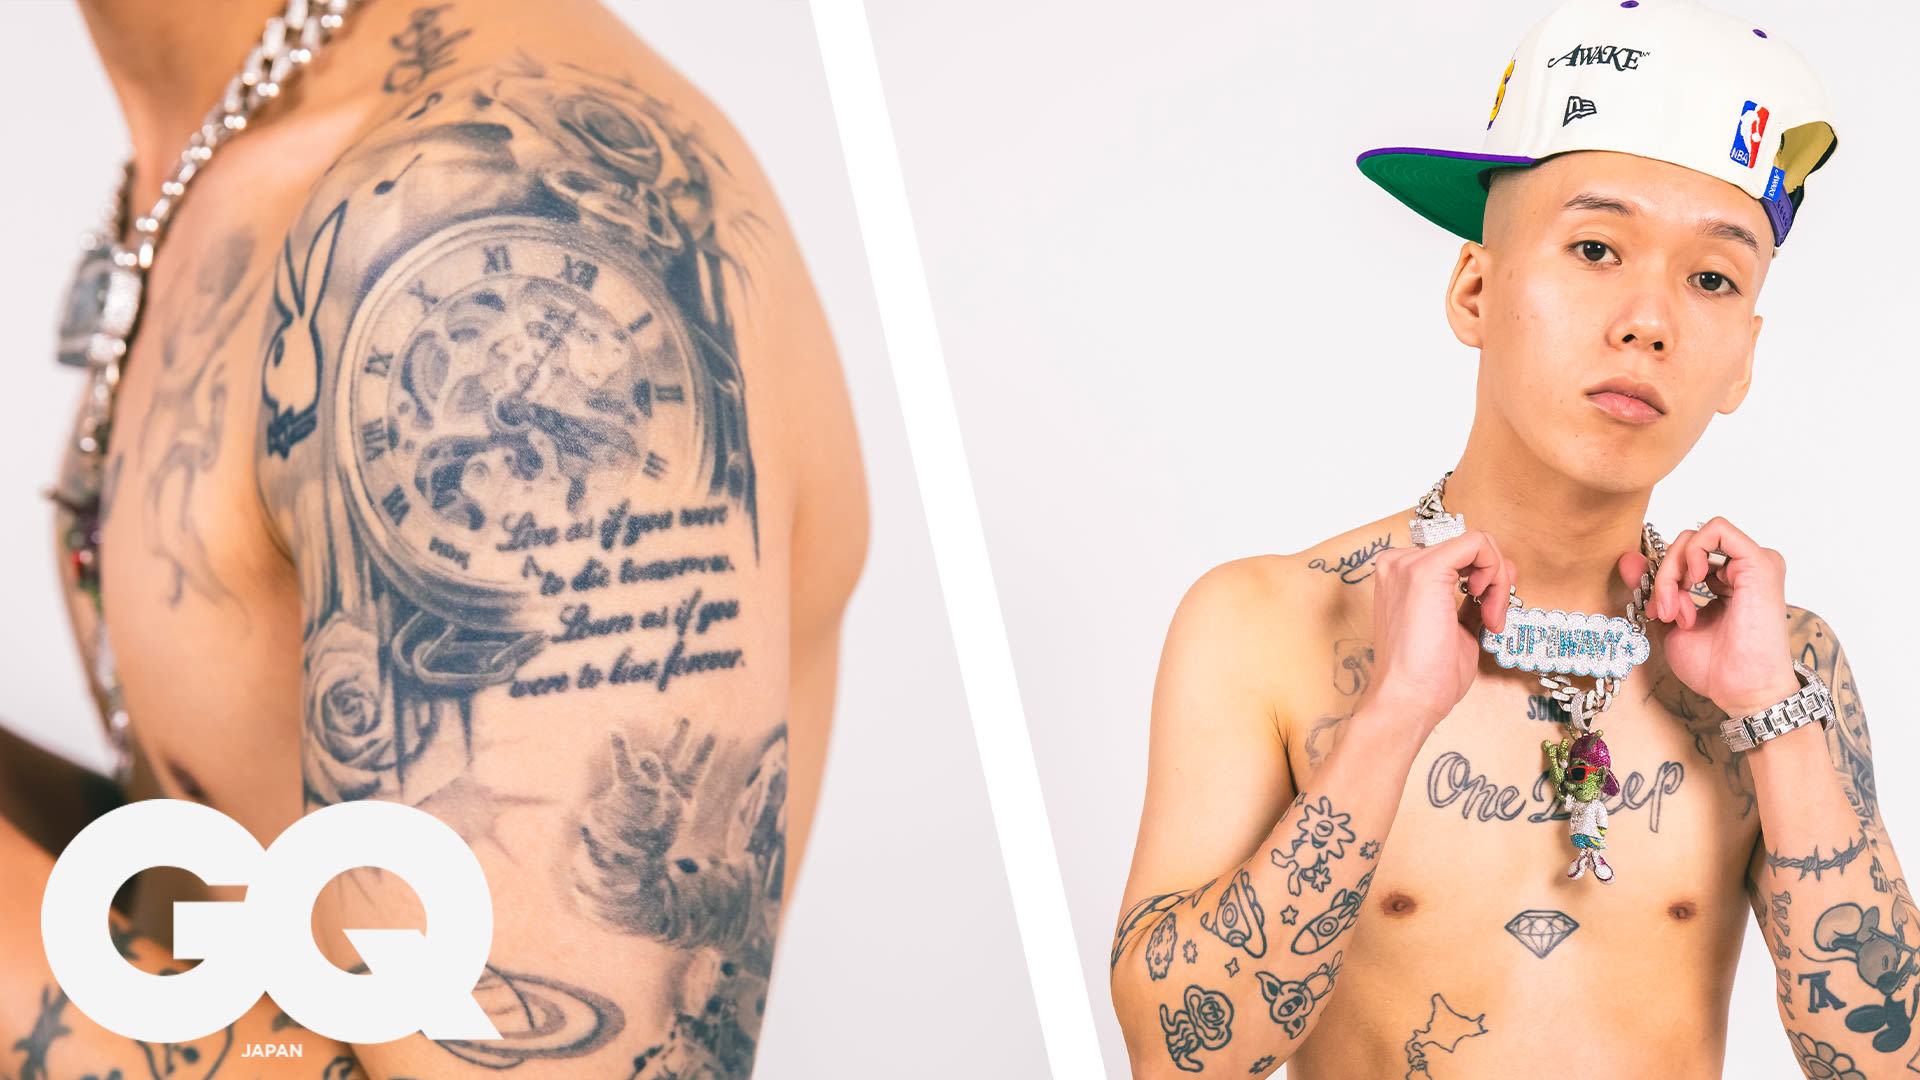 Watch Lil Skies、自慢のタトゥーを解説 | GQ JAPAN | Tattoo Tour | Tattoo Tour | GQ JAPAN